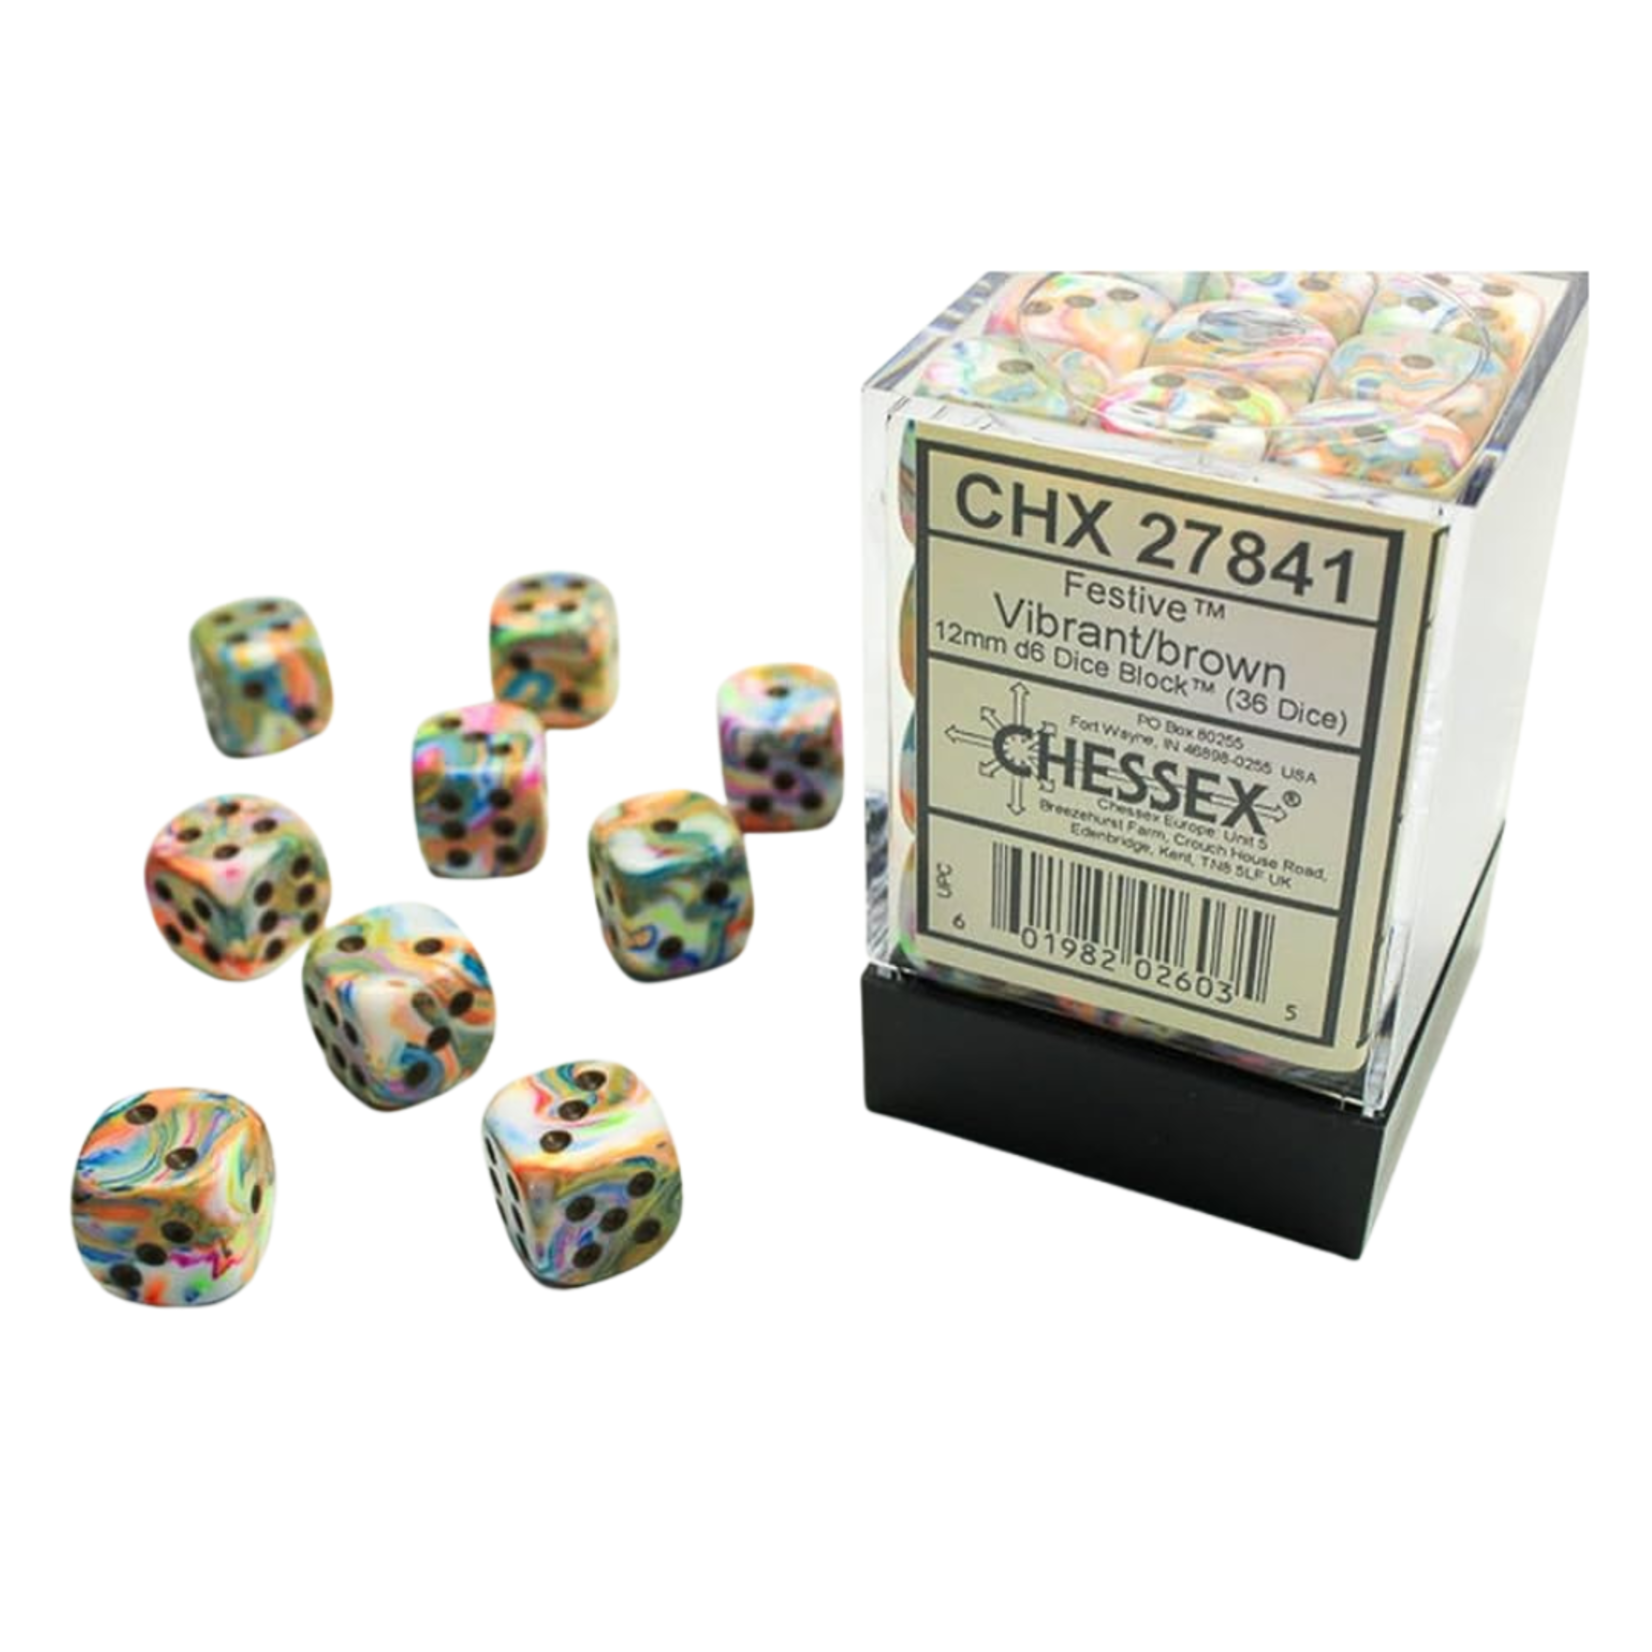 Chessex Kit de Dés Chessex Festive Vibrant/Brown 36d6